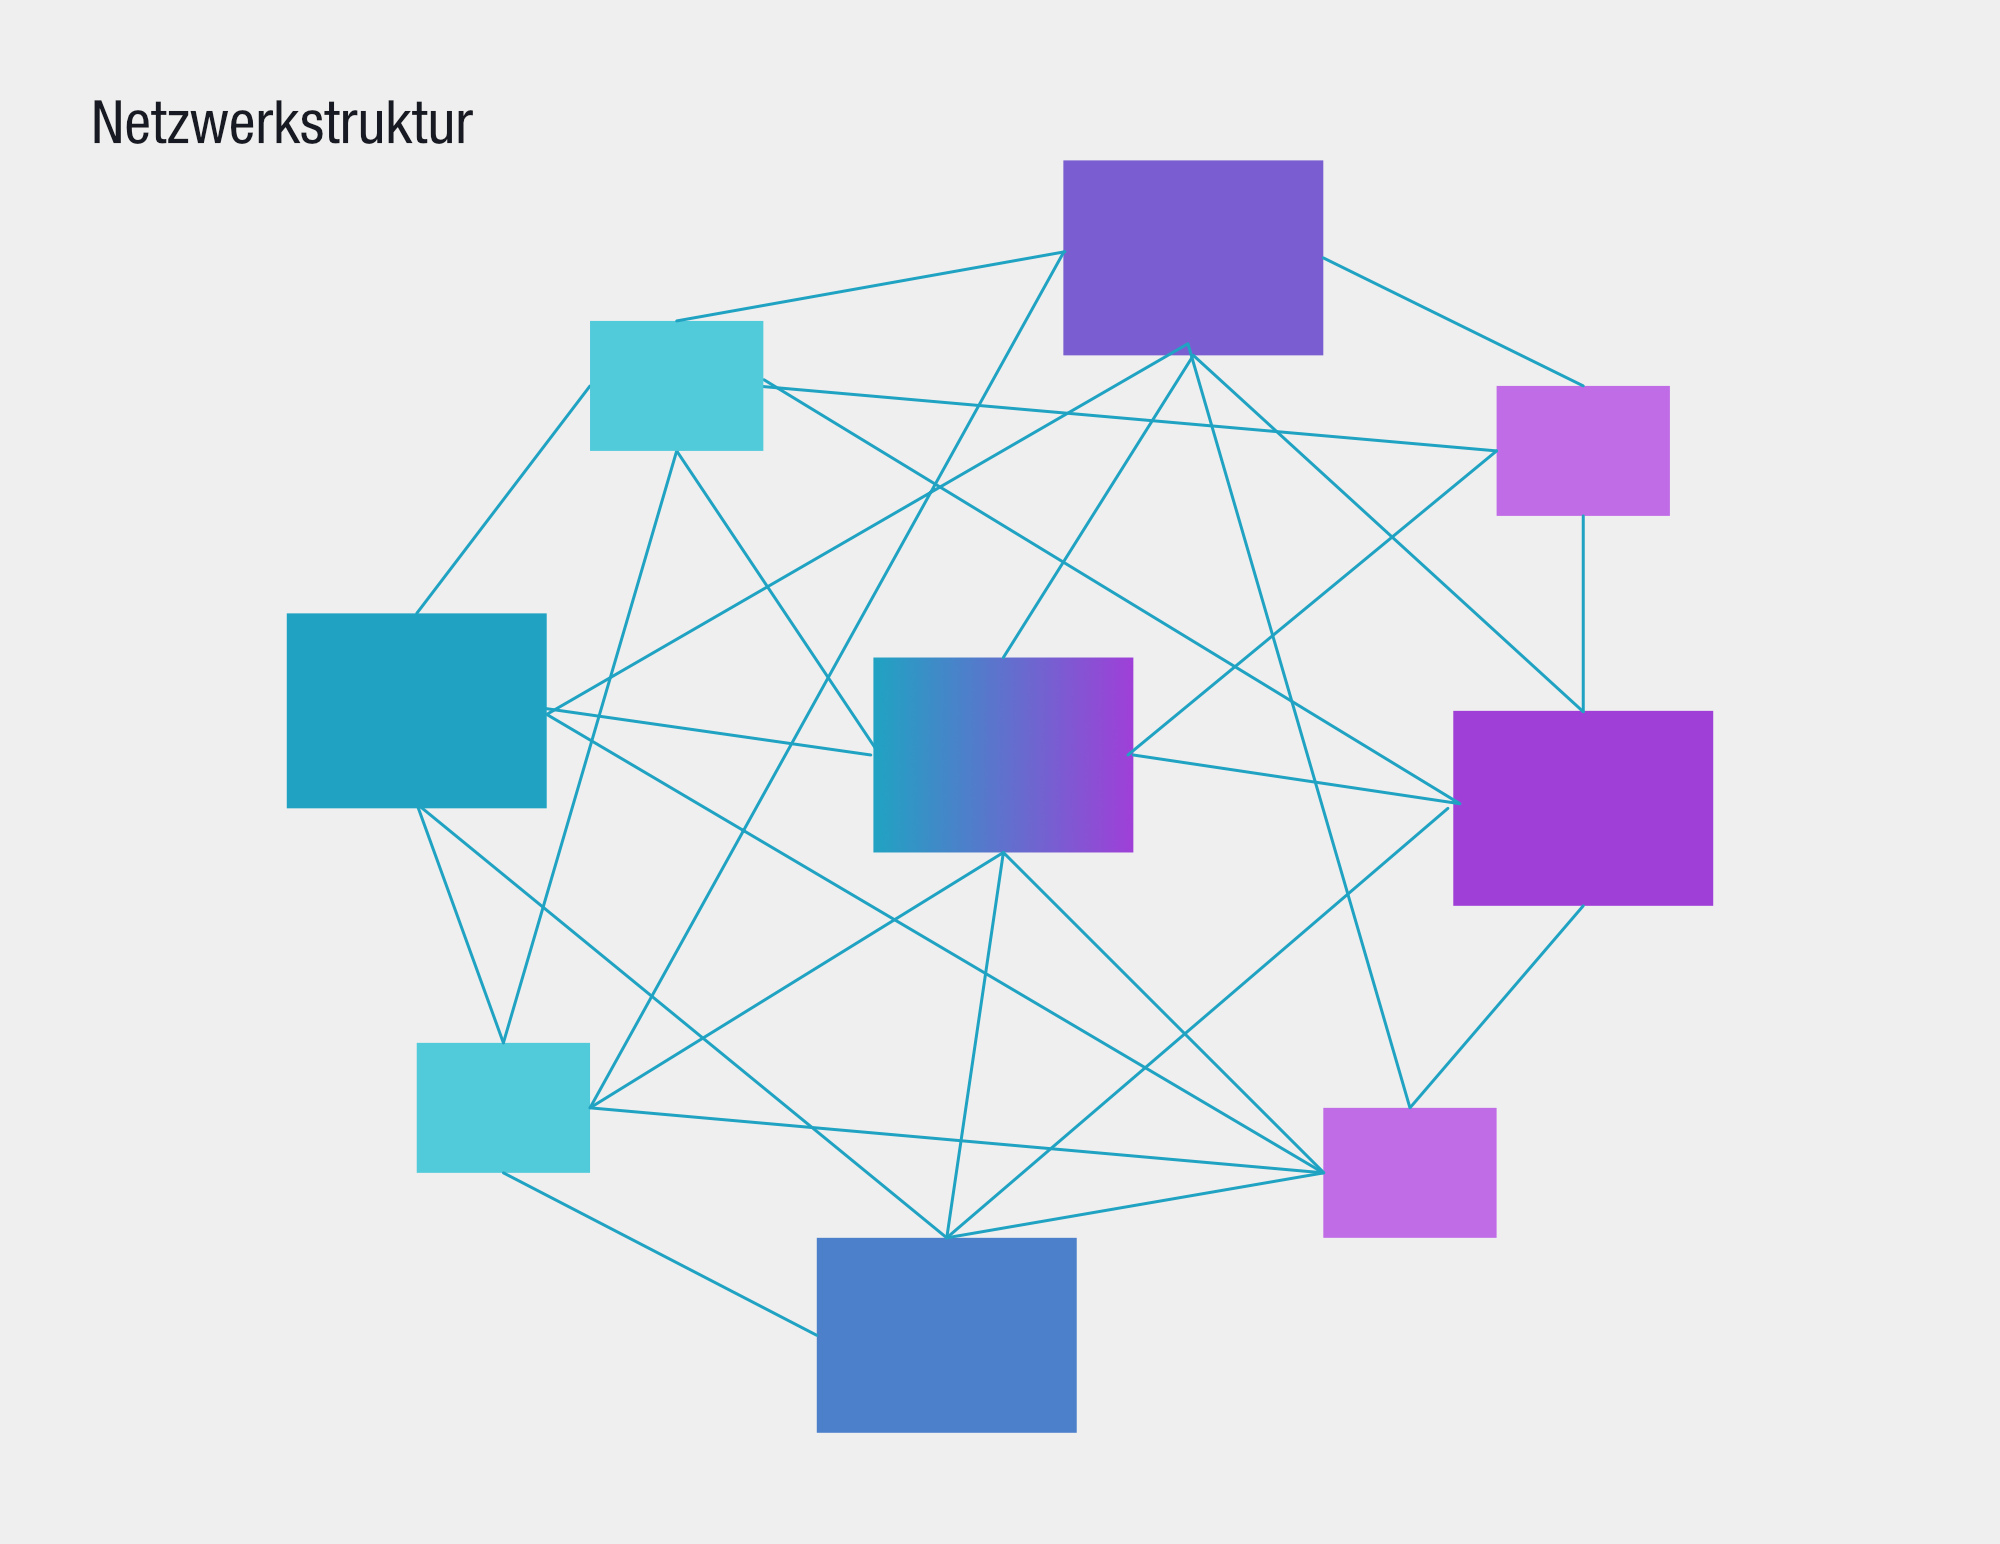 Netzwerkstruktur als Website-Aufbau